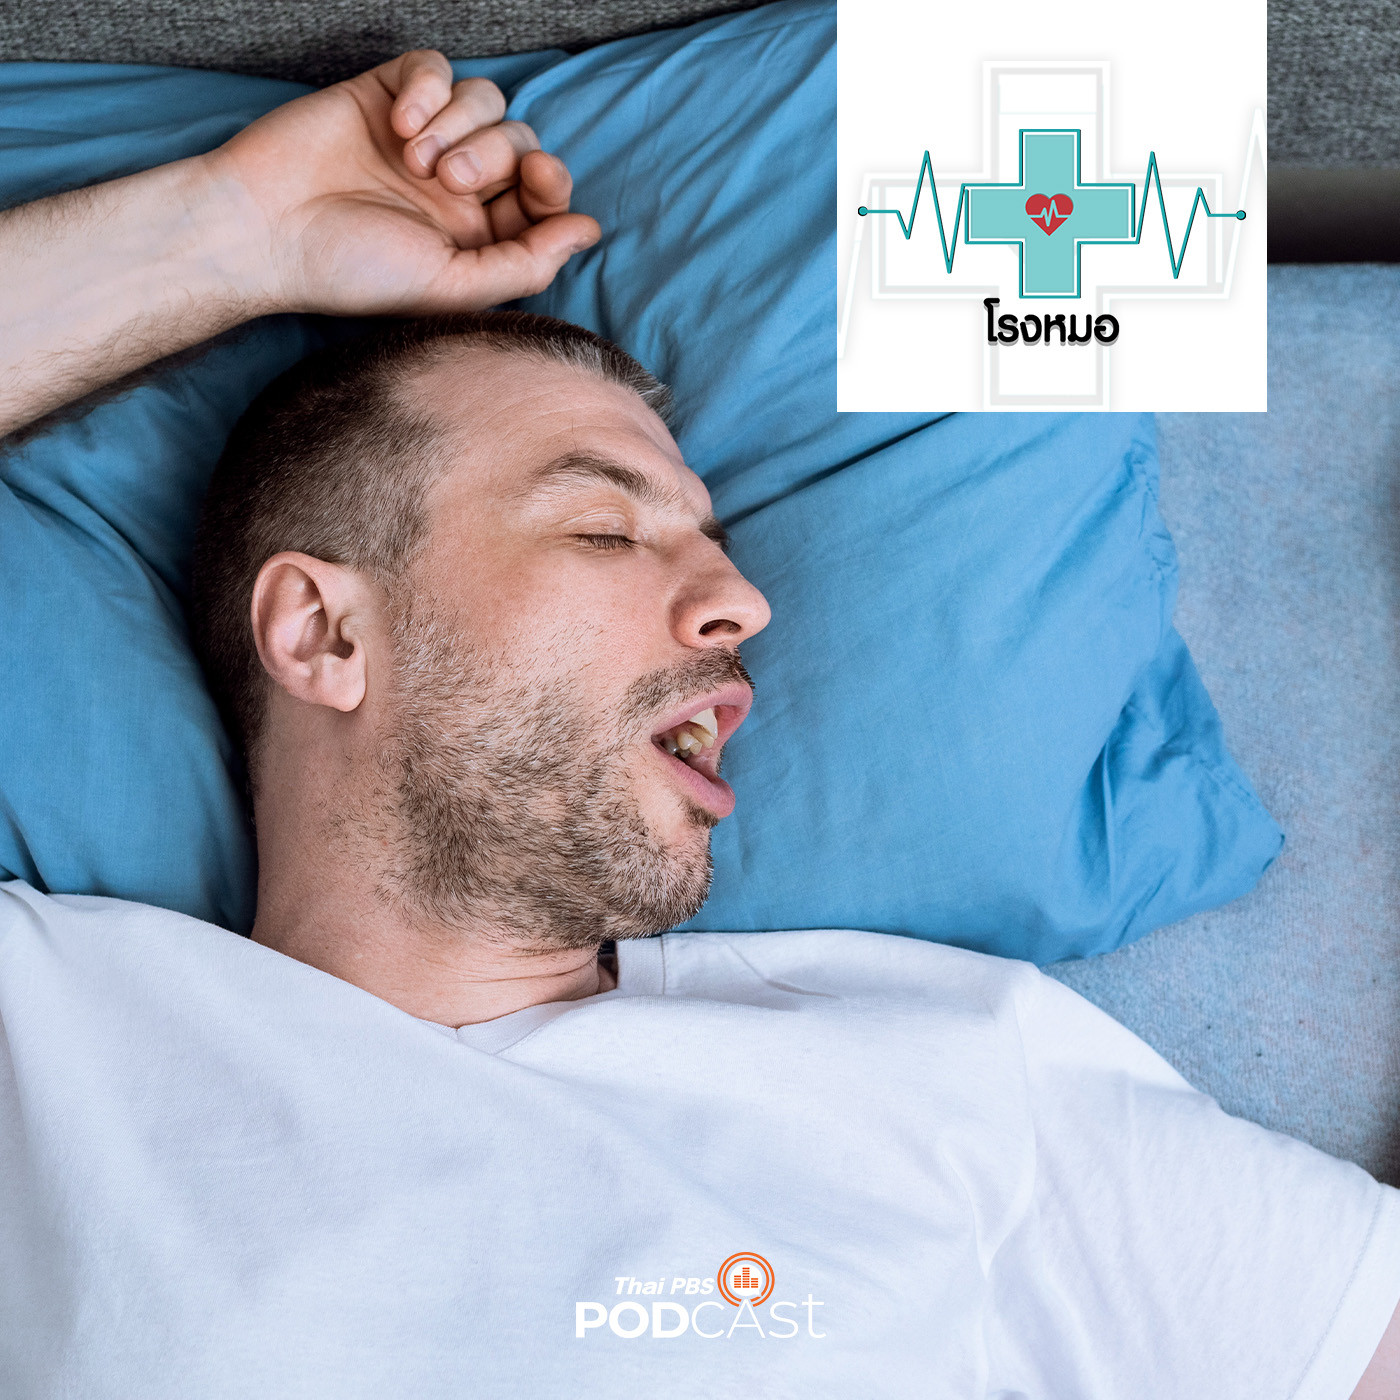 โรงหมอ EP. 900: ภาวะหยุดหายใจขณะนอนหลับ